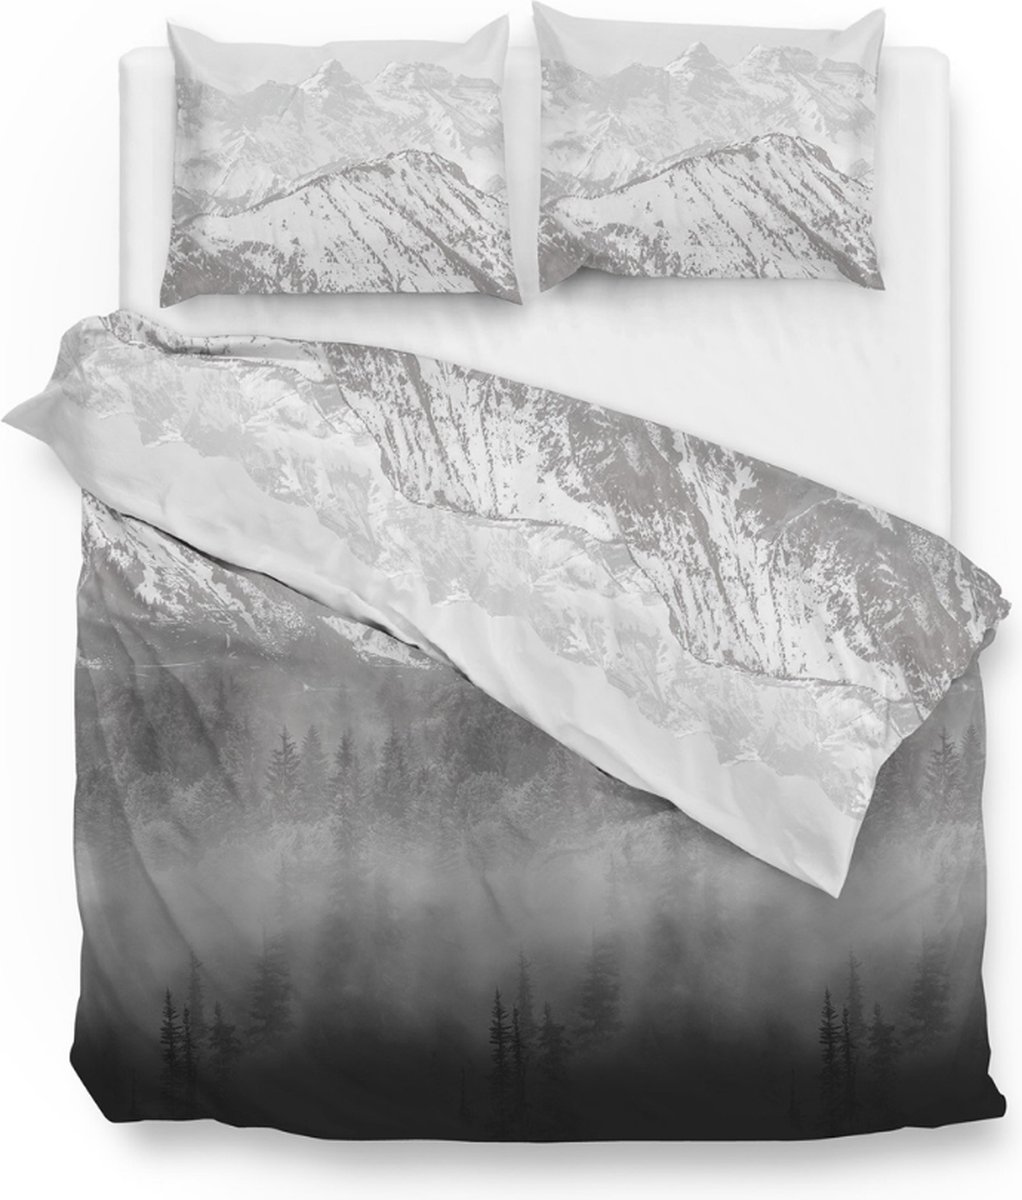 Warme flanel dekbedovertrek Mountains - extra breed (260x200/220) - hoogwaardig en zacht - ideaal tegen de kou